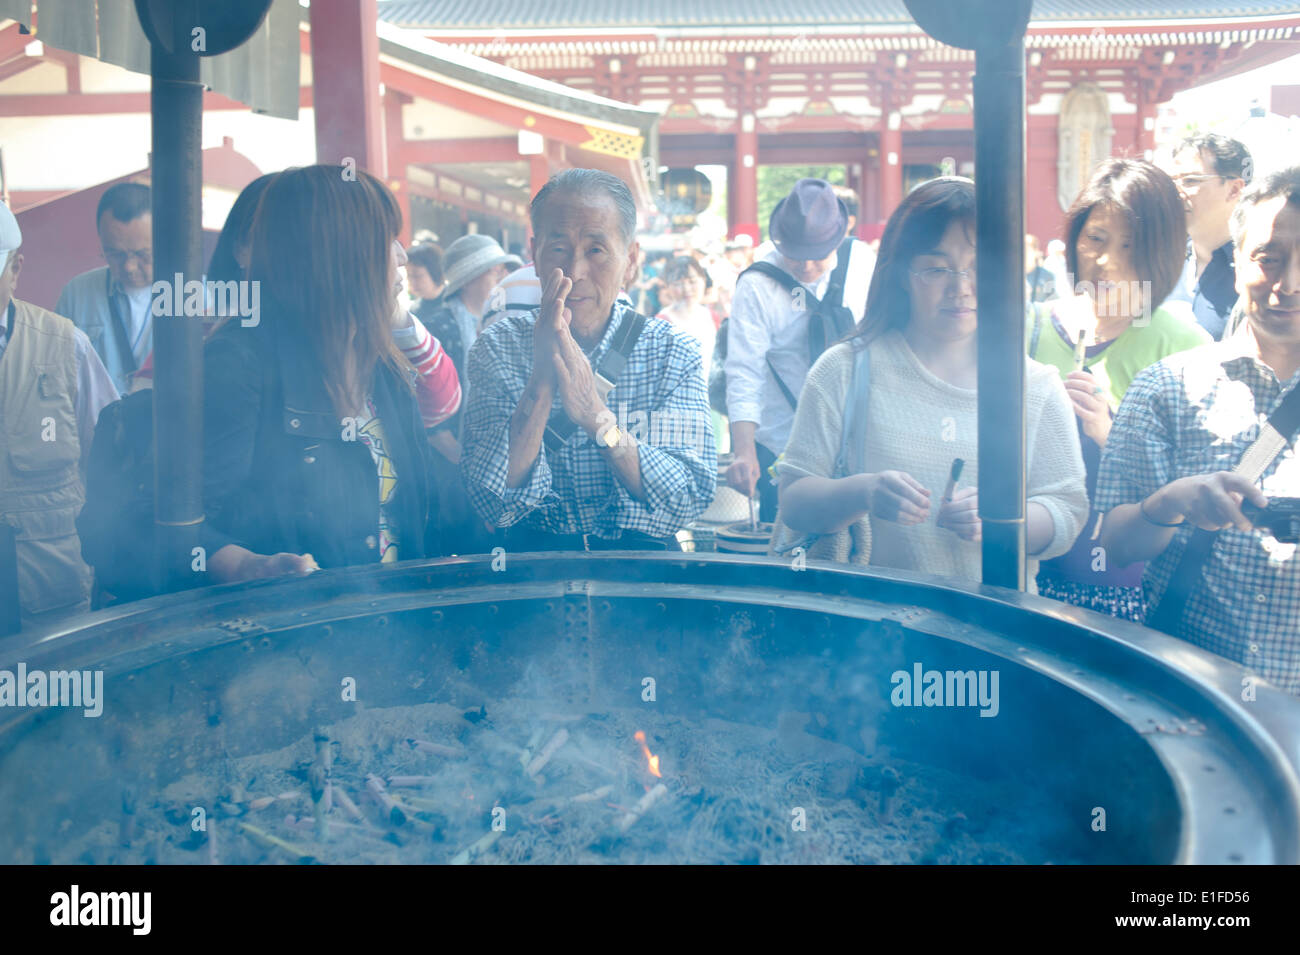 Tokyo, Giappone - 2014 - Japaneese persone si diffonde il fumo dal bruciatore di incenso o joukoro Foto Stock